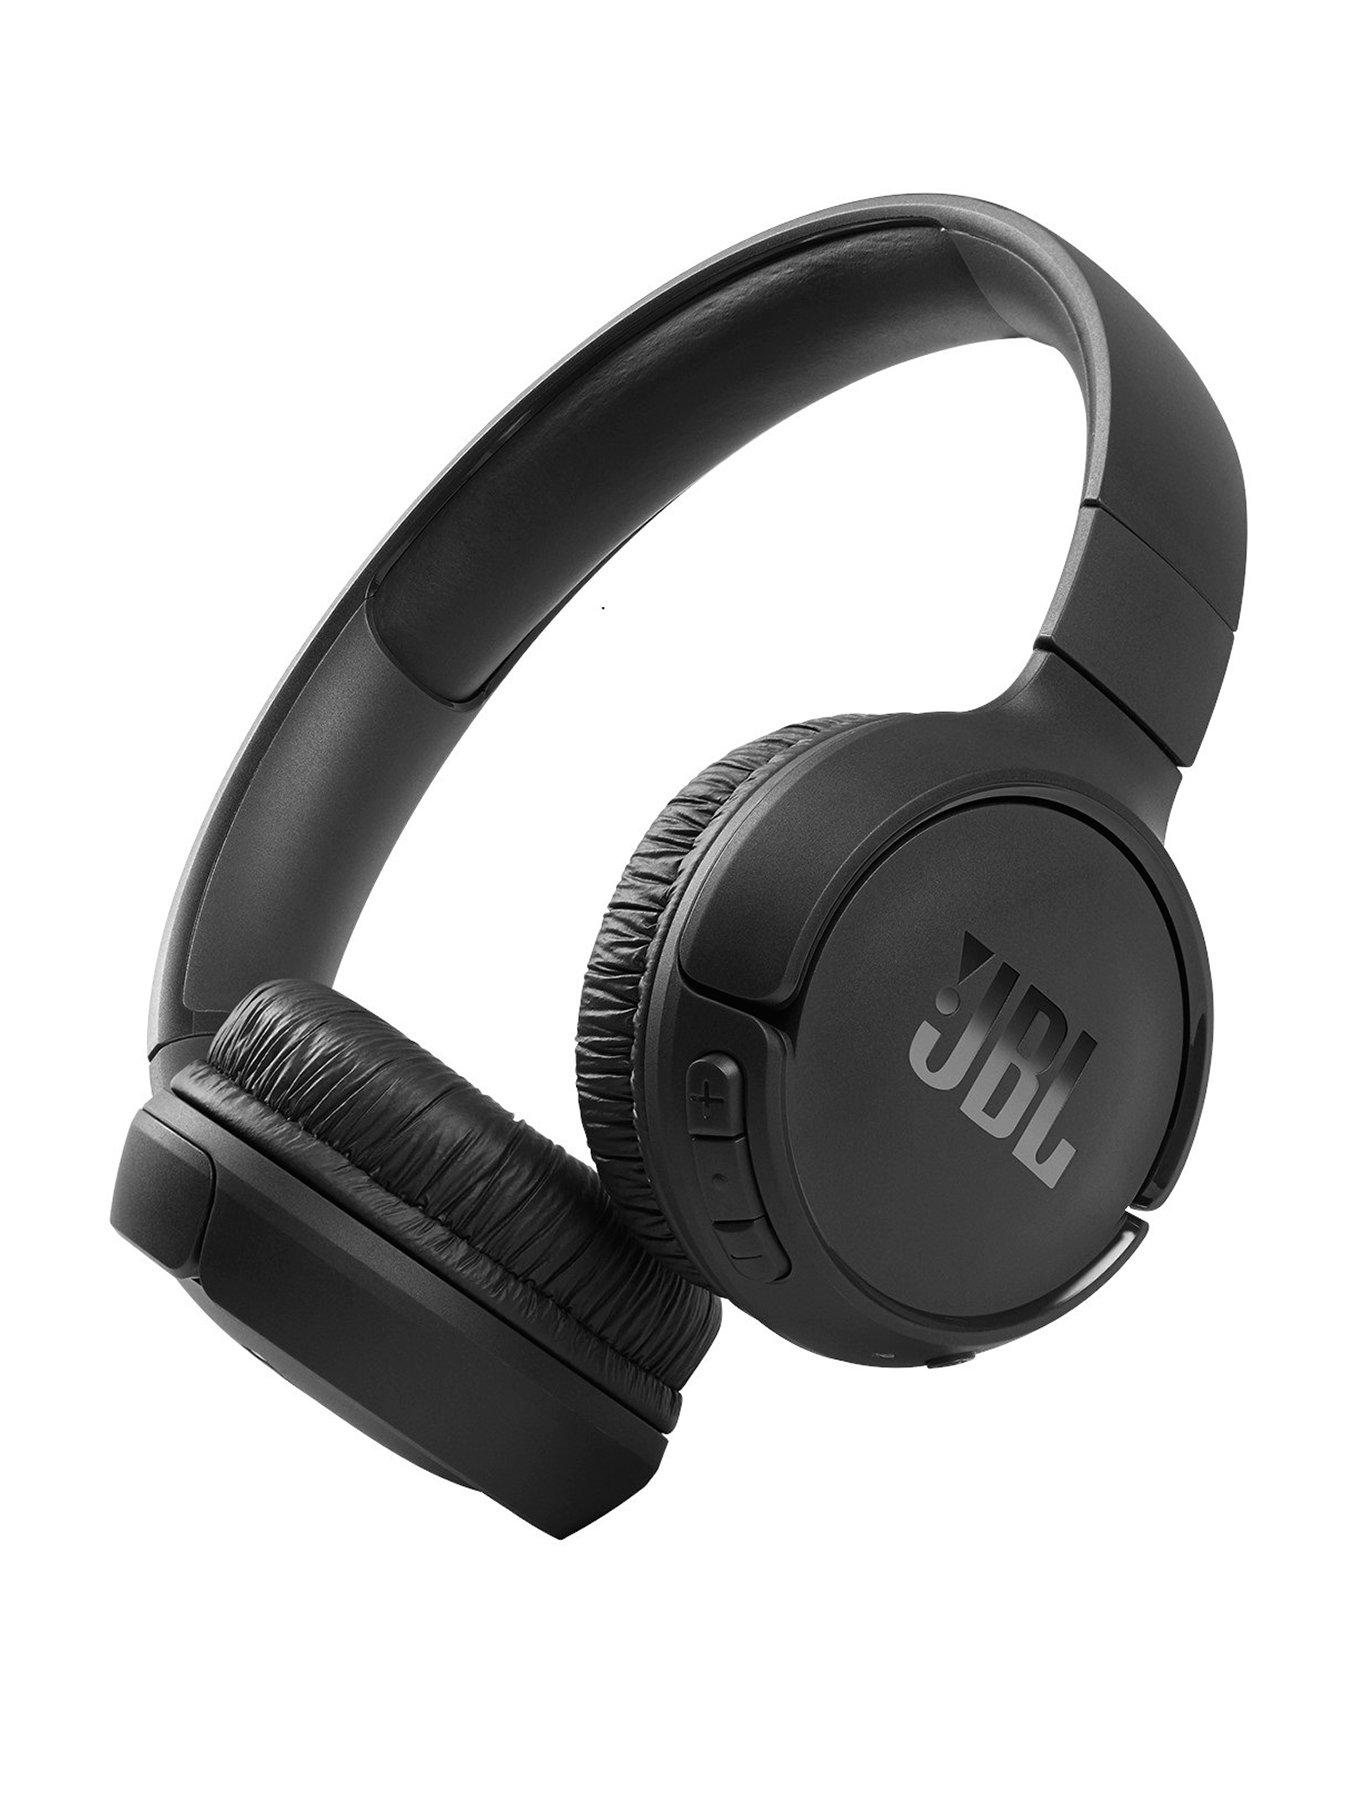 Jbl | Headphones Very Electricals Ireland | 